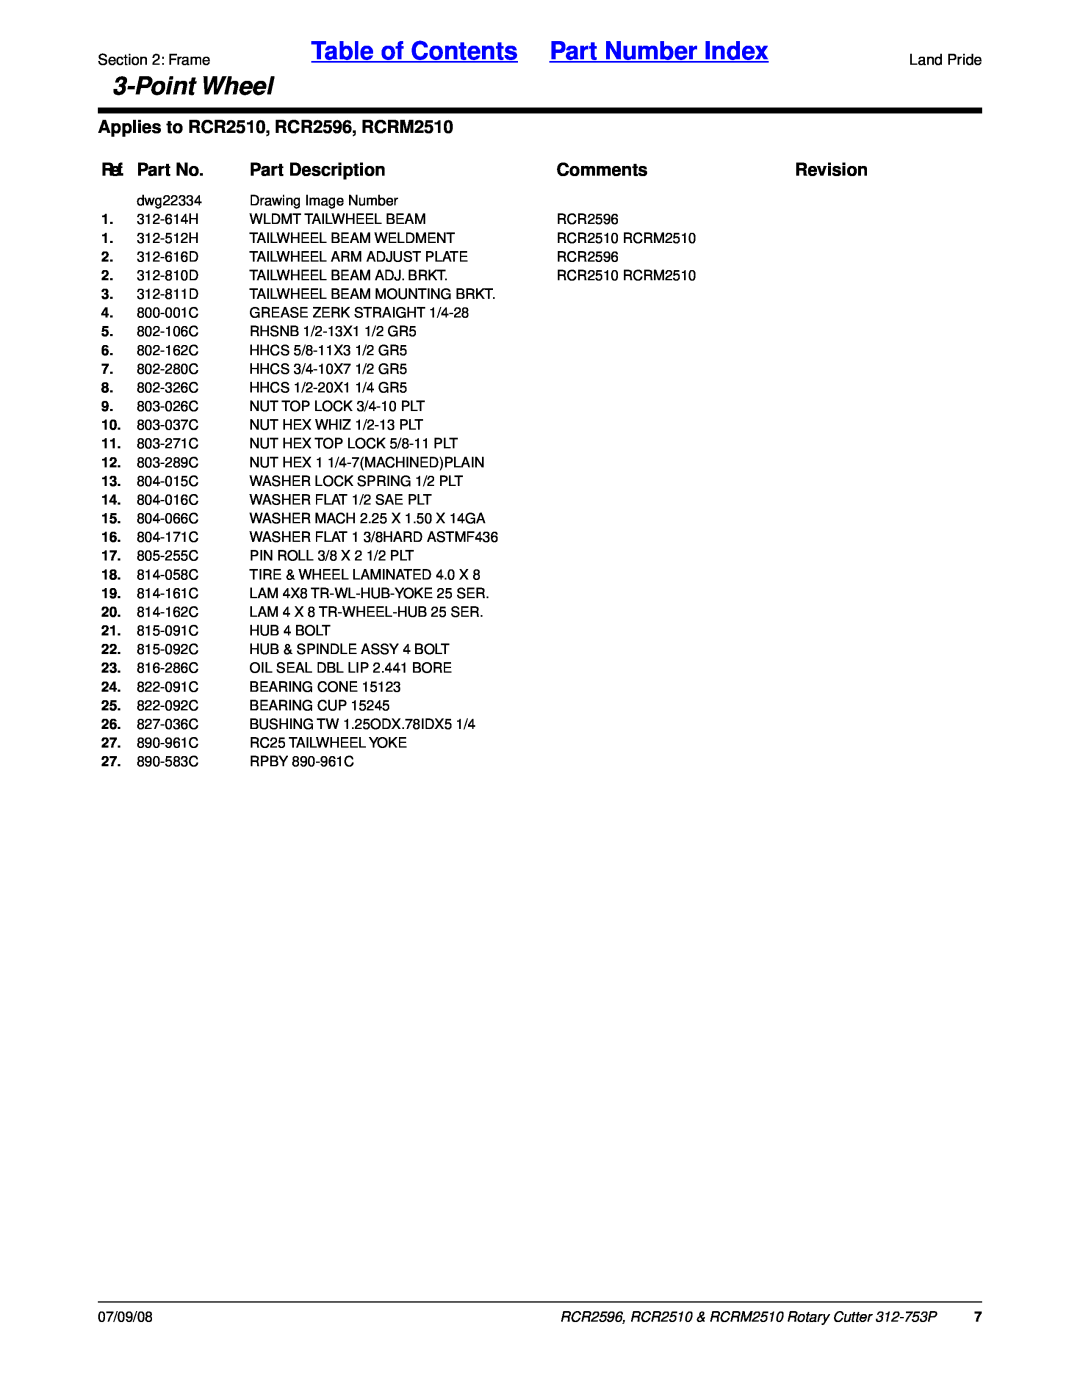 Land Pride RCRM2510 Ref. Part No, Part Description, Comments, Revision, Table of Contents Part Number Index, PointWheel 